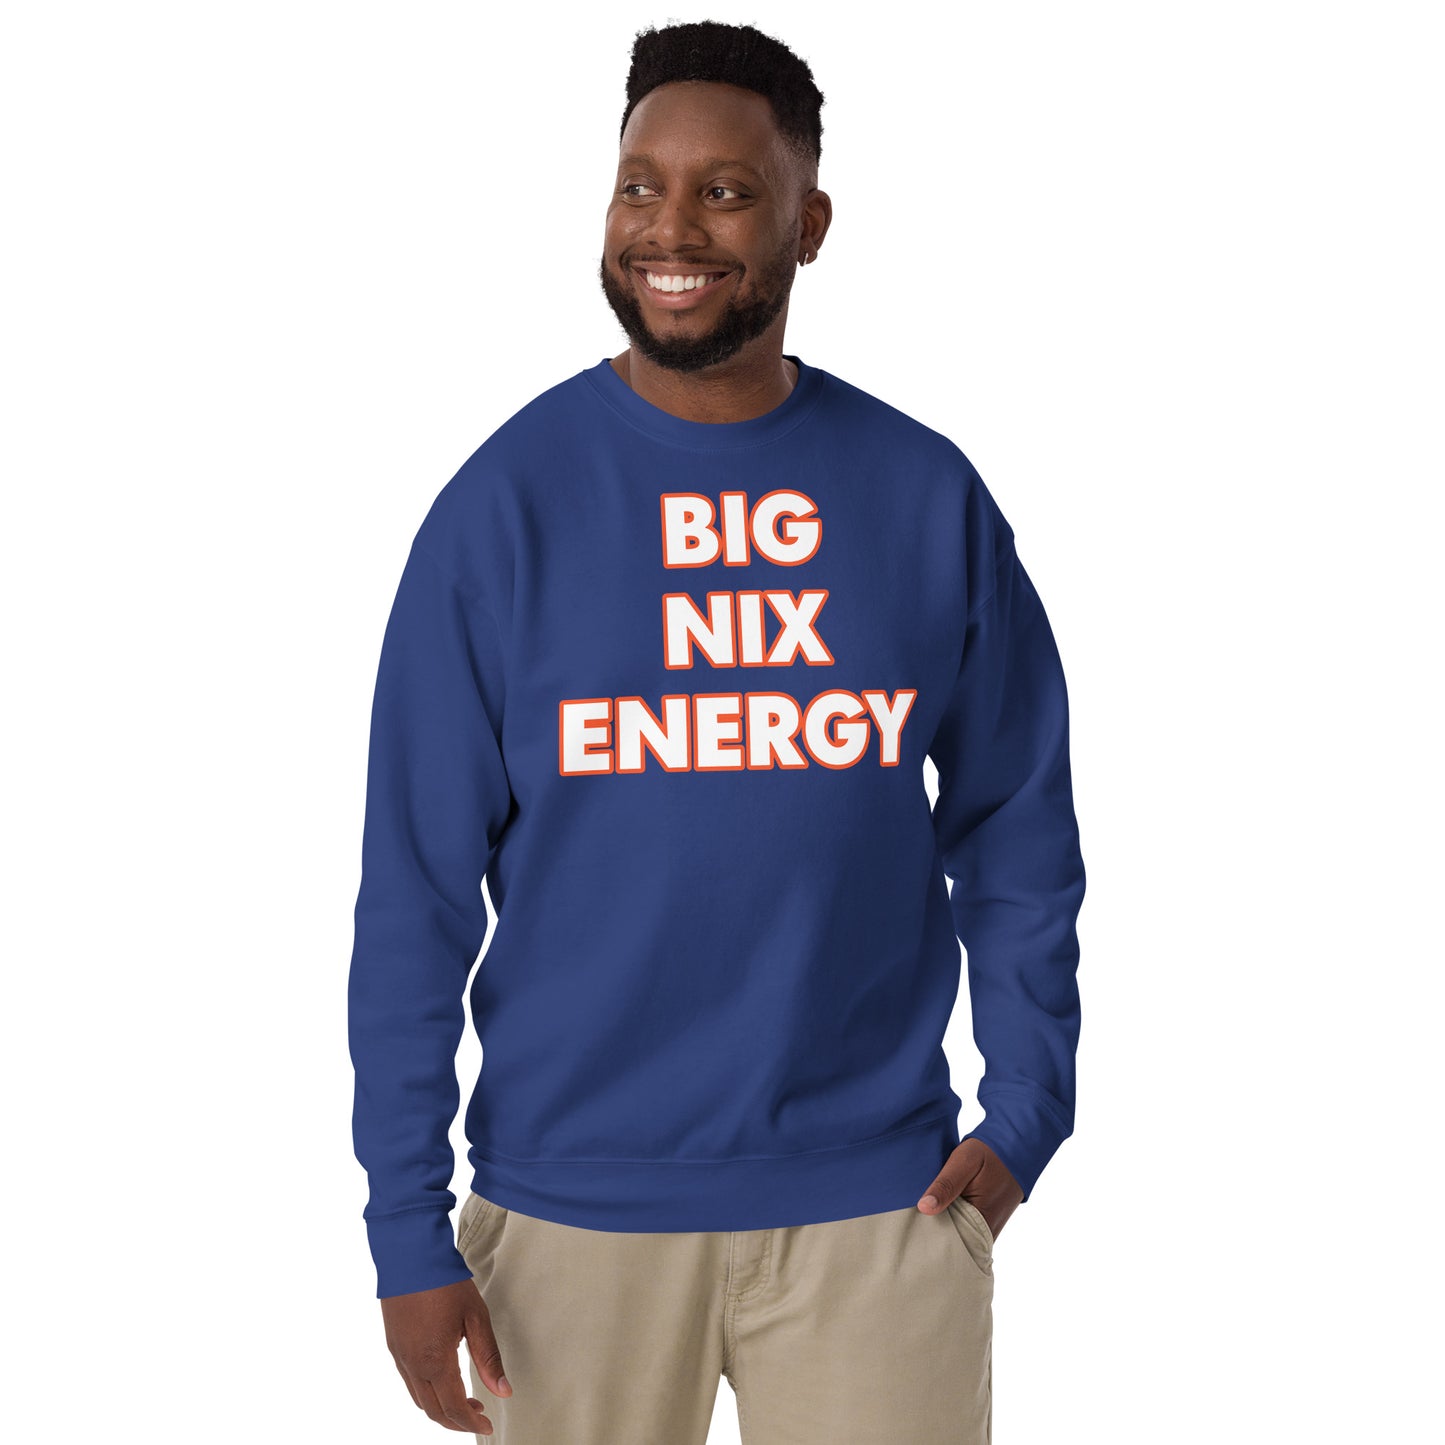 "BIG NIX ENERGY" Unisex Premium Sweatshirt